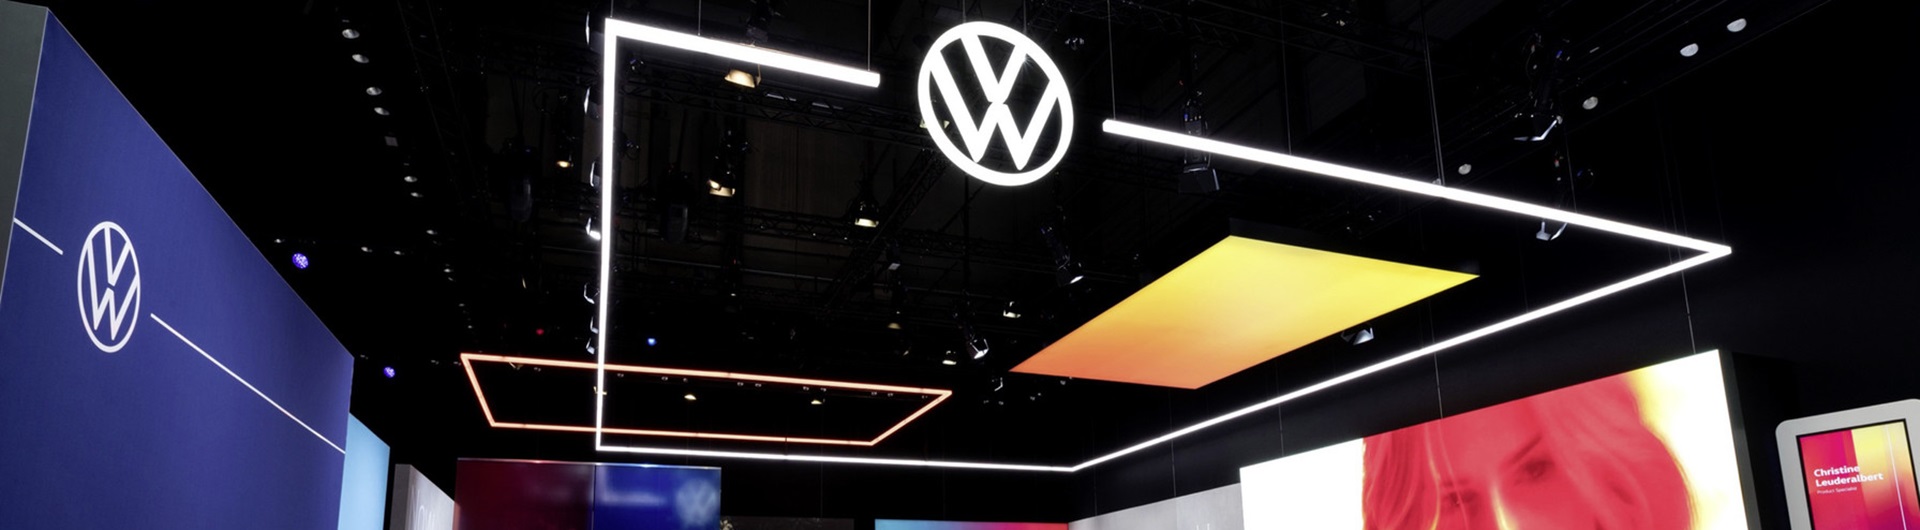 Na wielu platformach, rynkach i... samochodach. Volkswagen zmienił nie tylko logo